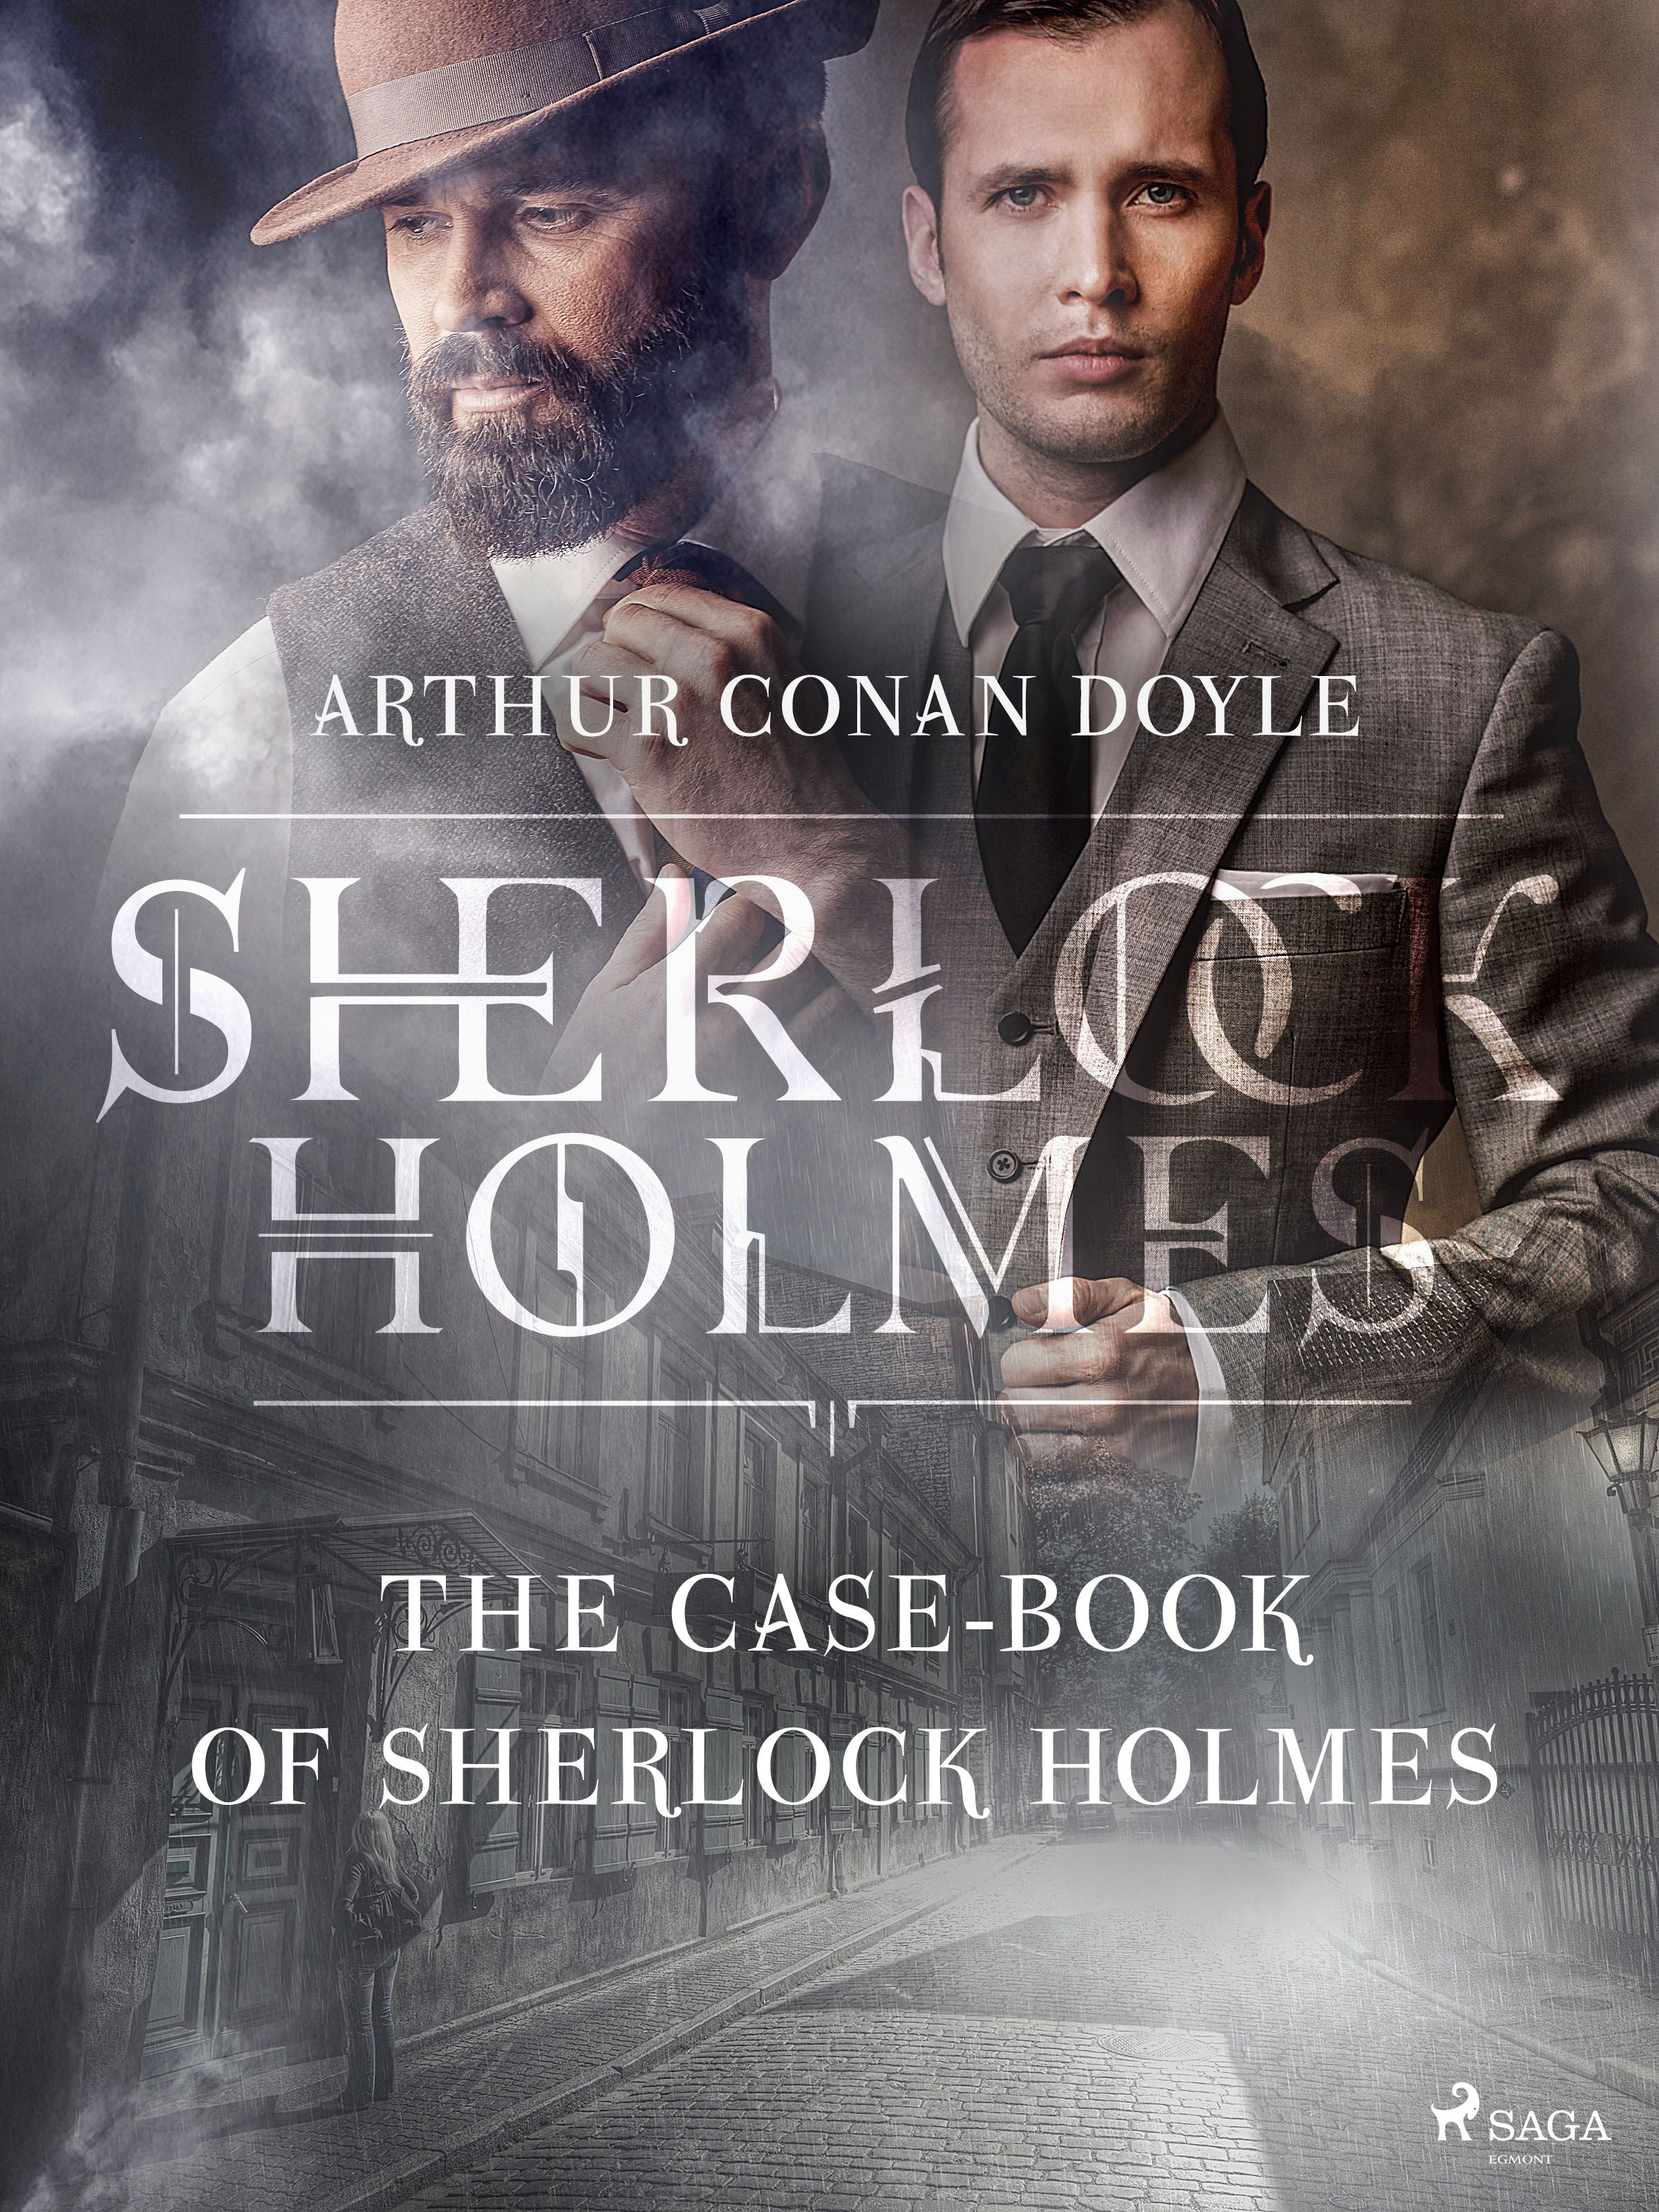 The Case-Book of Sherlock Holmes, e-bok av Arthur Conan Doyle